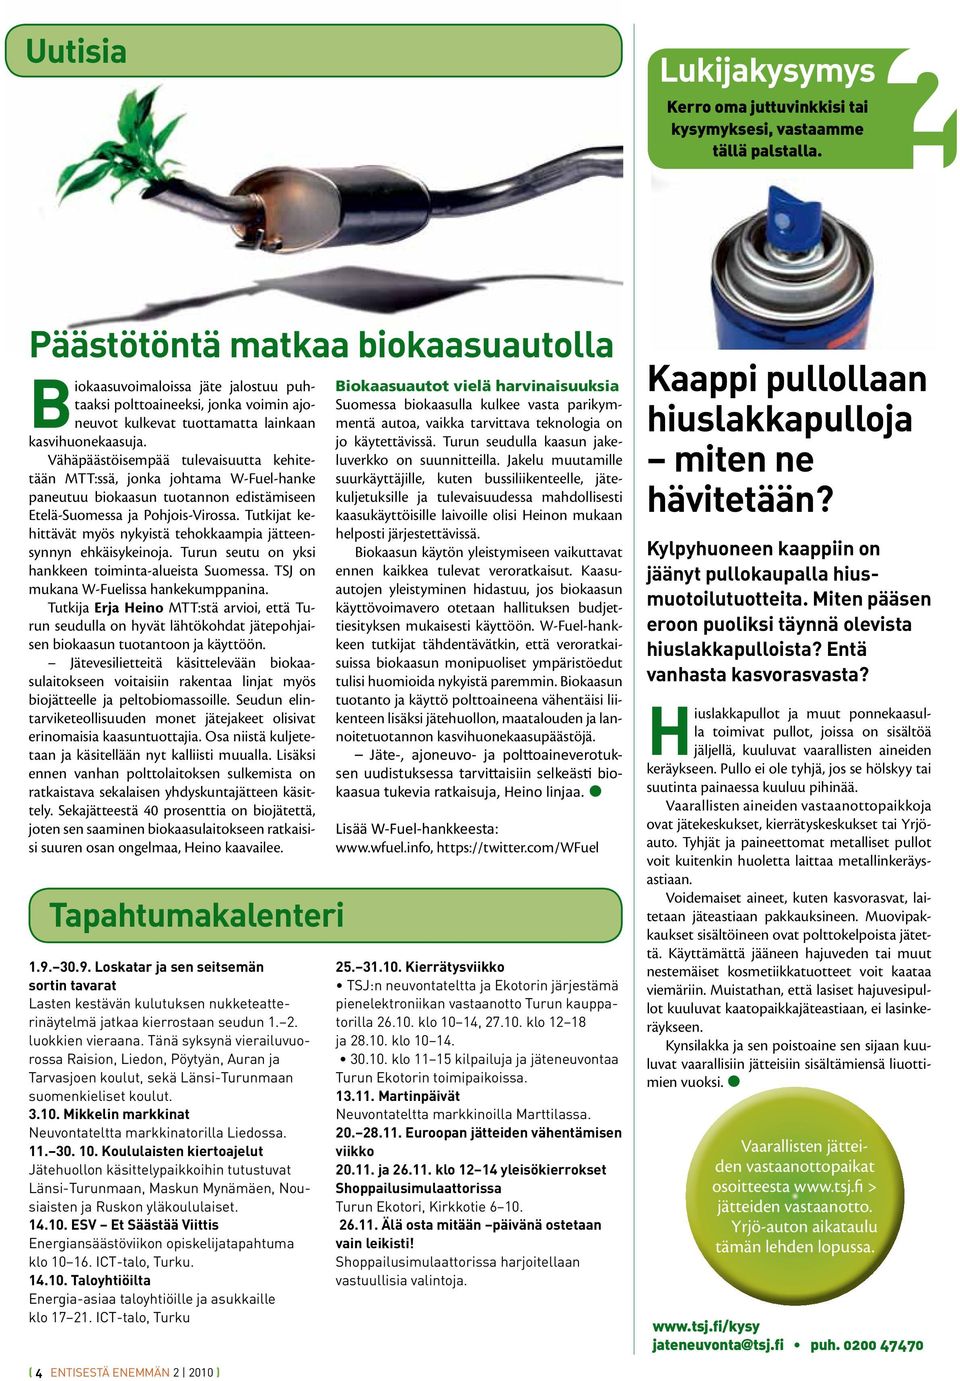 Vähäpäästöisempää tulevaisuutta kehitetään MTT:ssä, jonka johtama W-Fuel-hanke paneutuu biokaasun tuotannon edistämiseen Etelä-Suomessa ja Pohjois-Virossa.